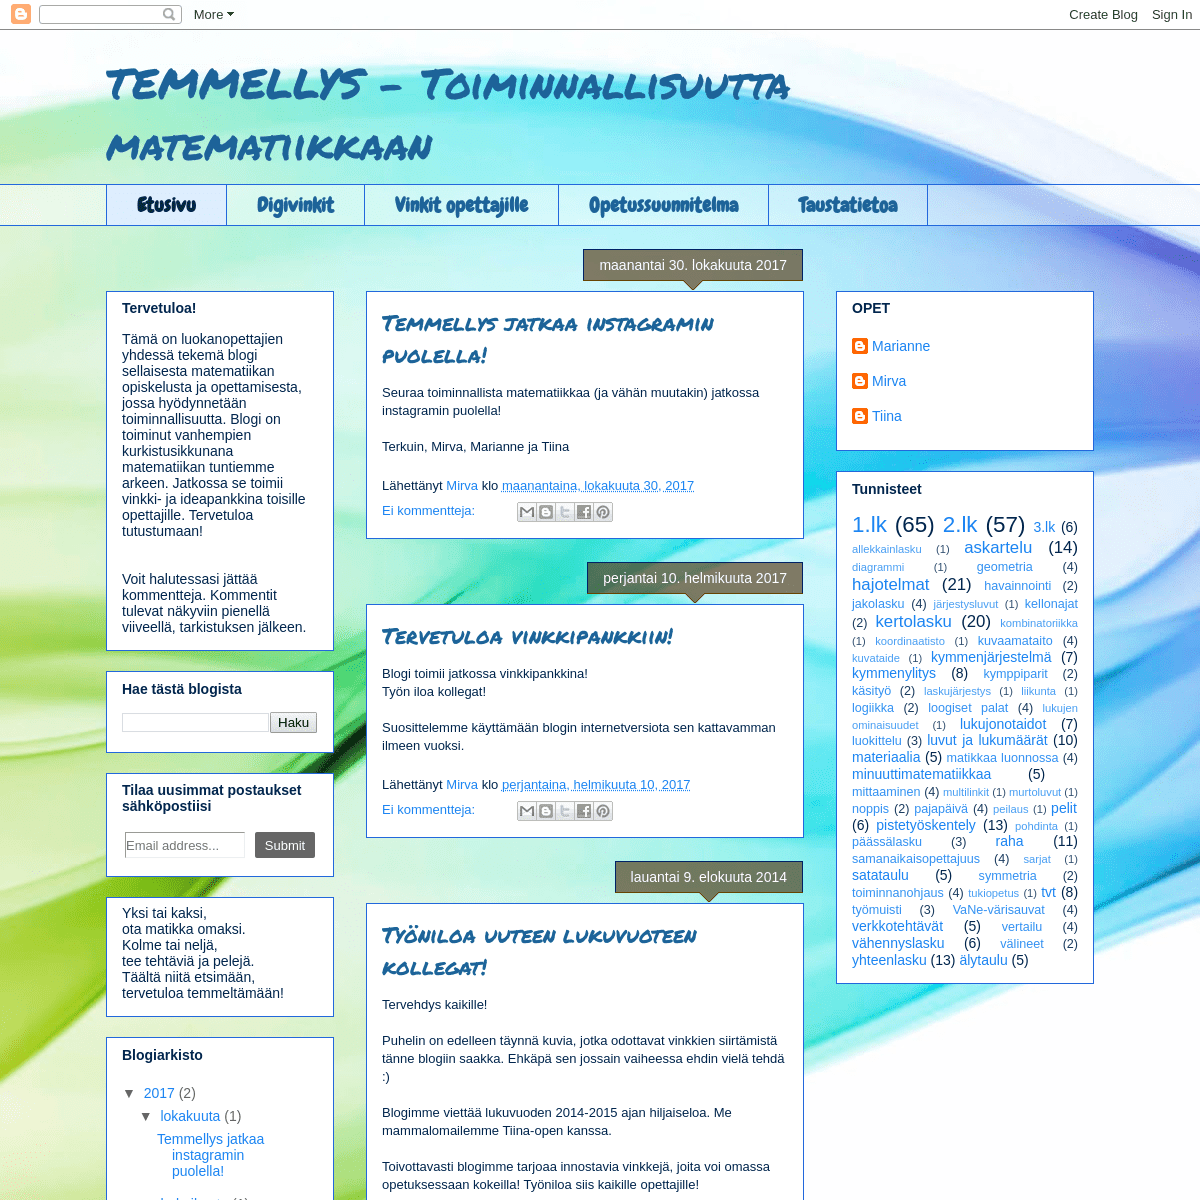 A complete backup of temmellys.blogspot.com